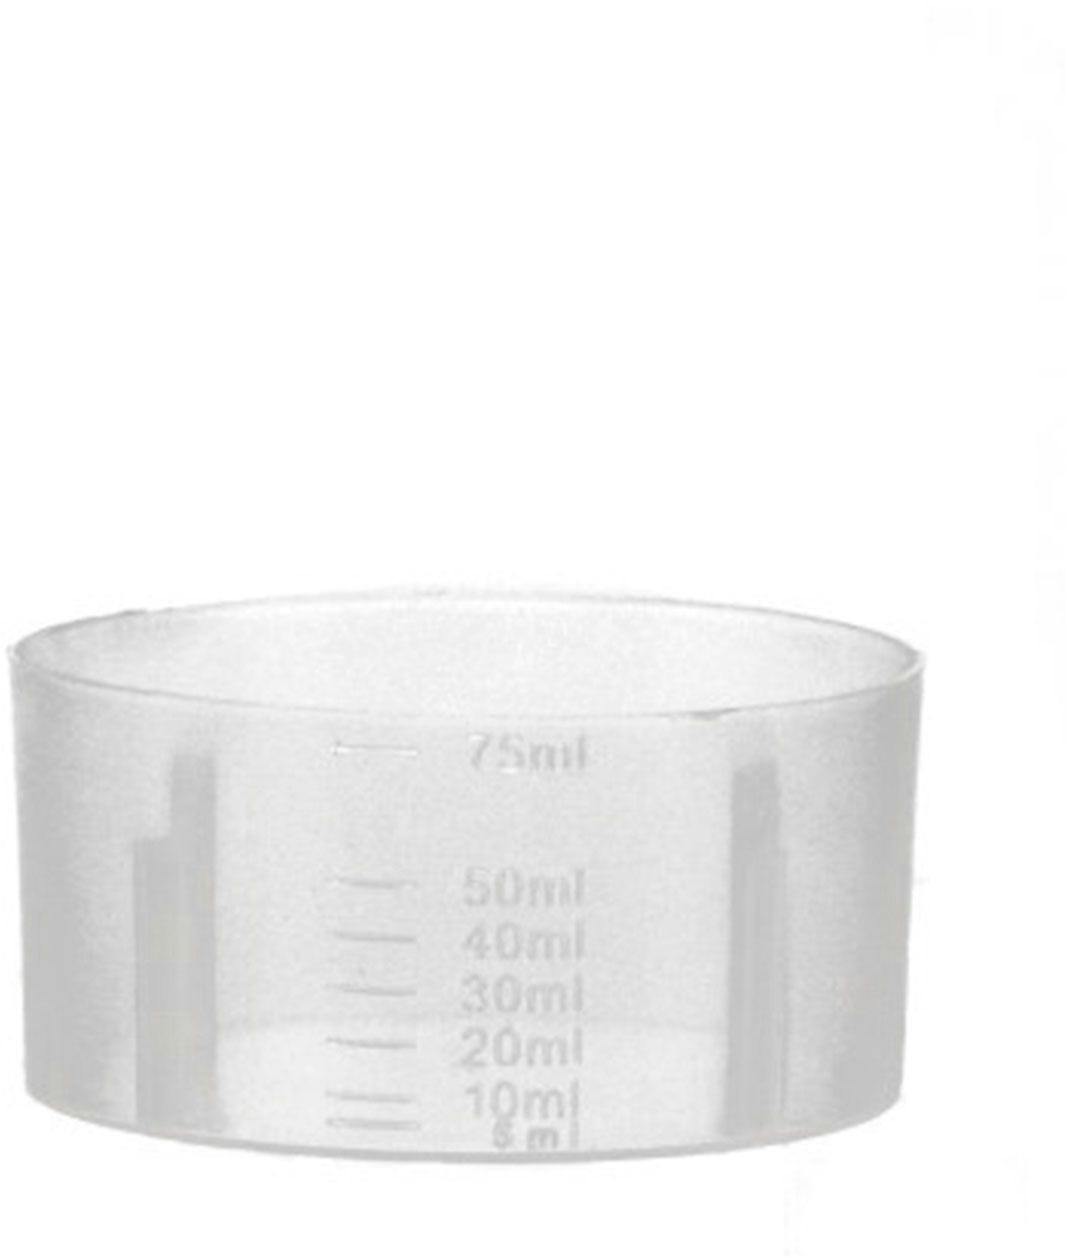 Dispensing cup PP 75 ml natural D50